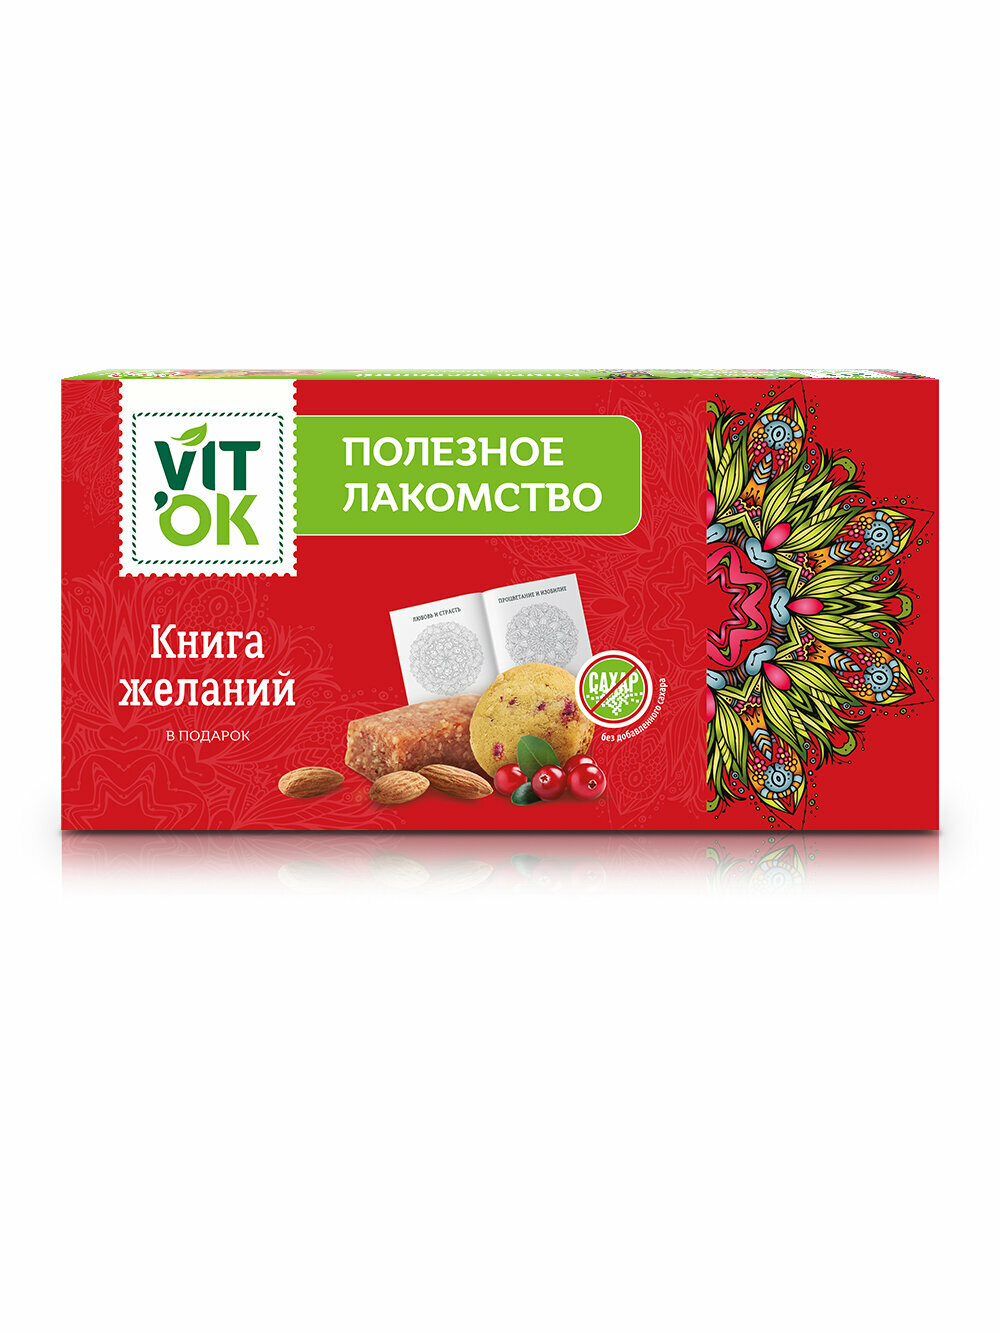 Подарочный набор Vitok полезные конфеты с печеньем без сахара и мандала для раскрашивания в коробке, 2 шт. по 220 г